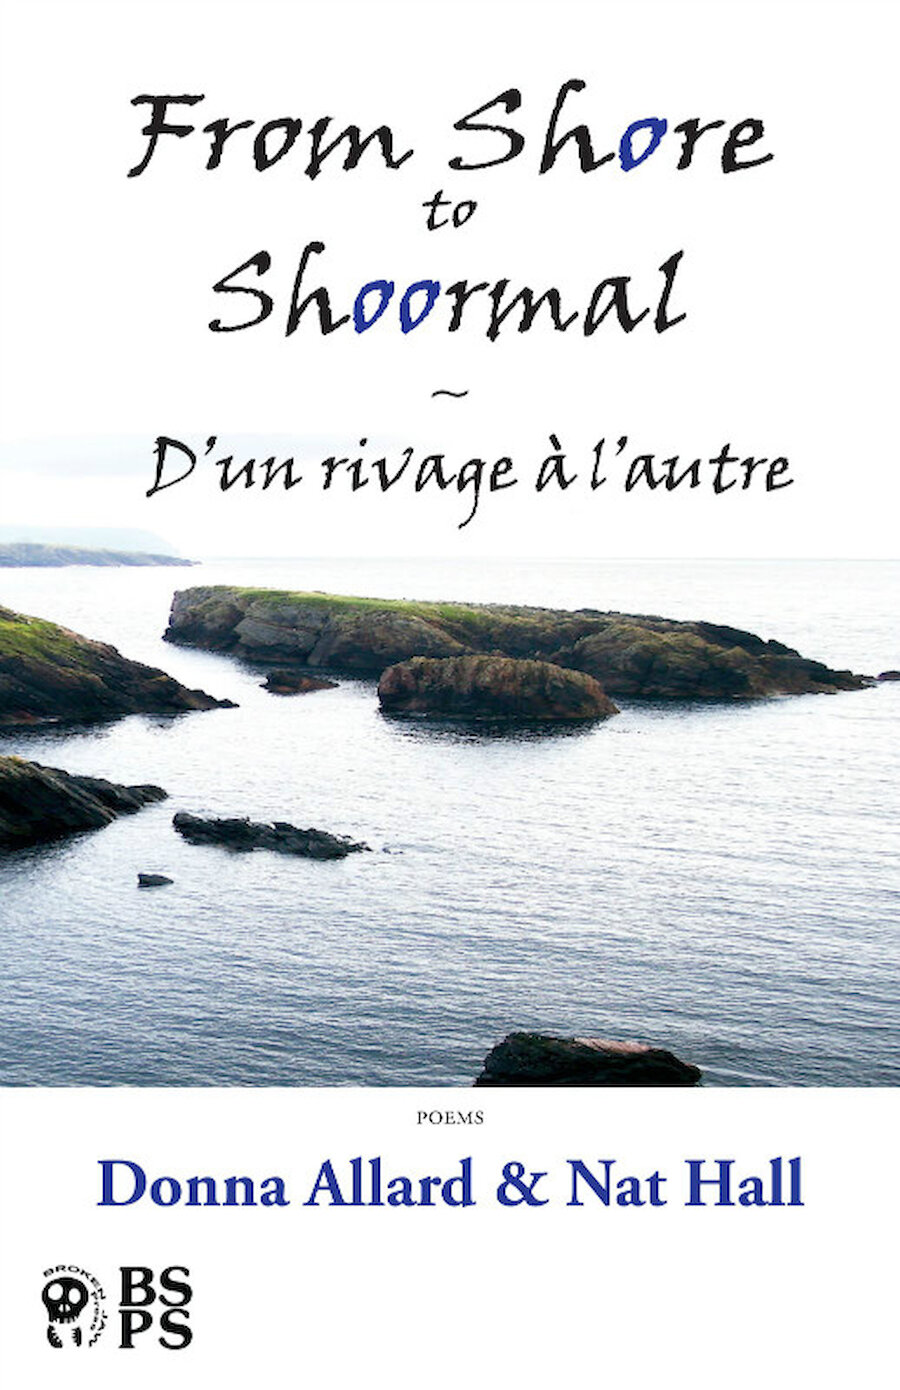 From Shore to Shoormal - Donna Allard & Nat Hall